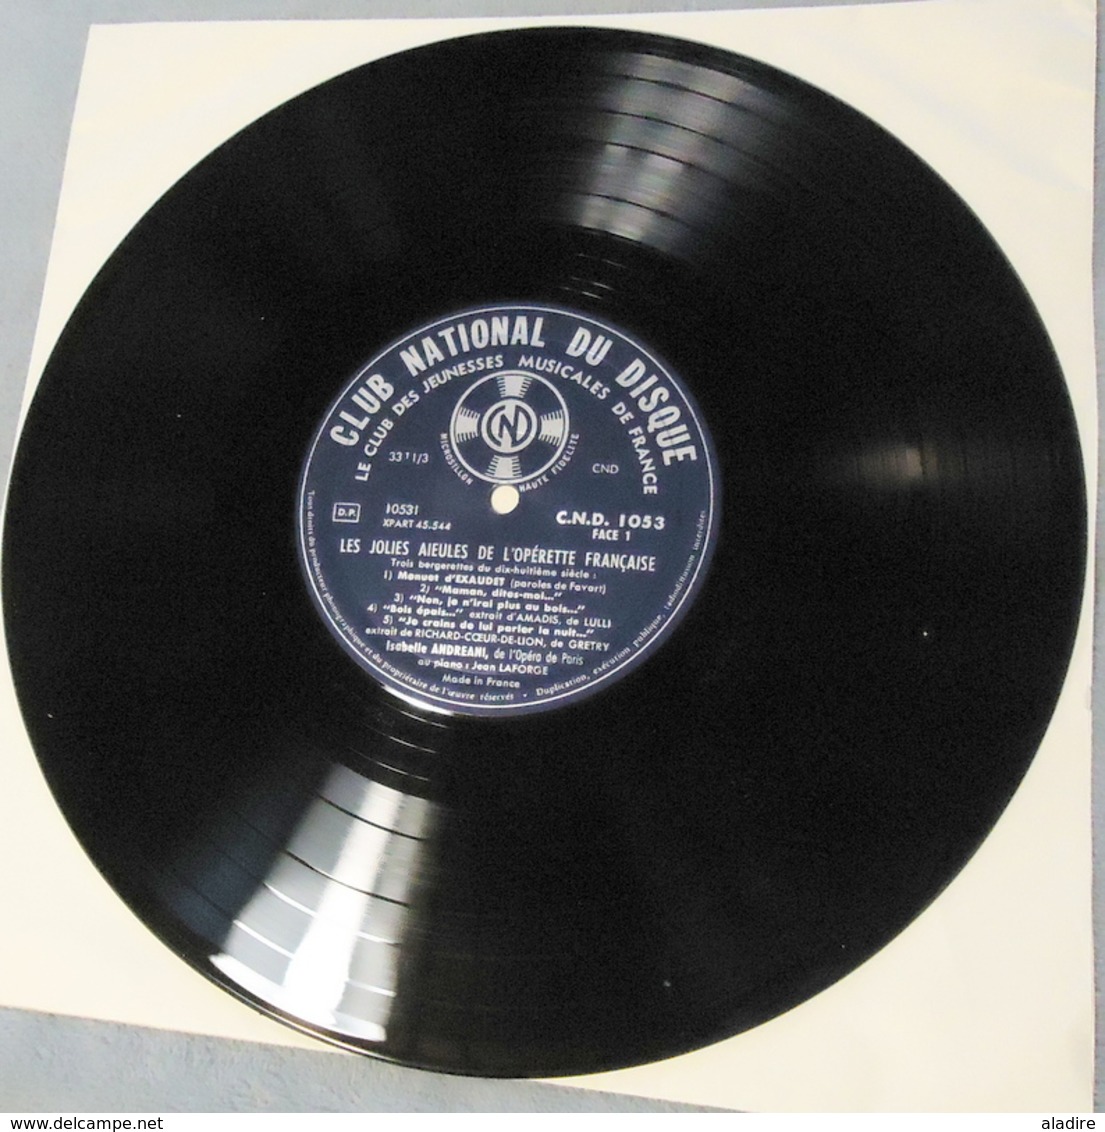 1960 - Panorama de l' OPERETTE française - 5 disques vinyle dans coffret velours et livret d'introduction 38 pages